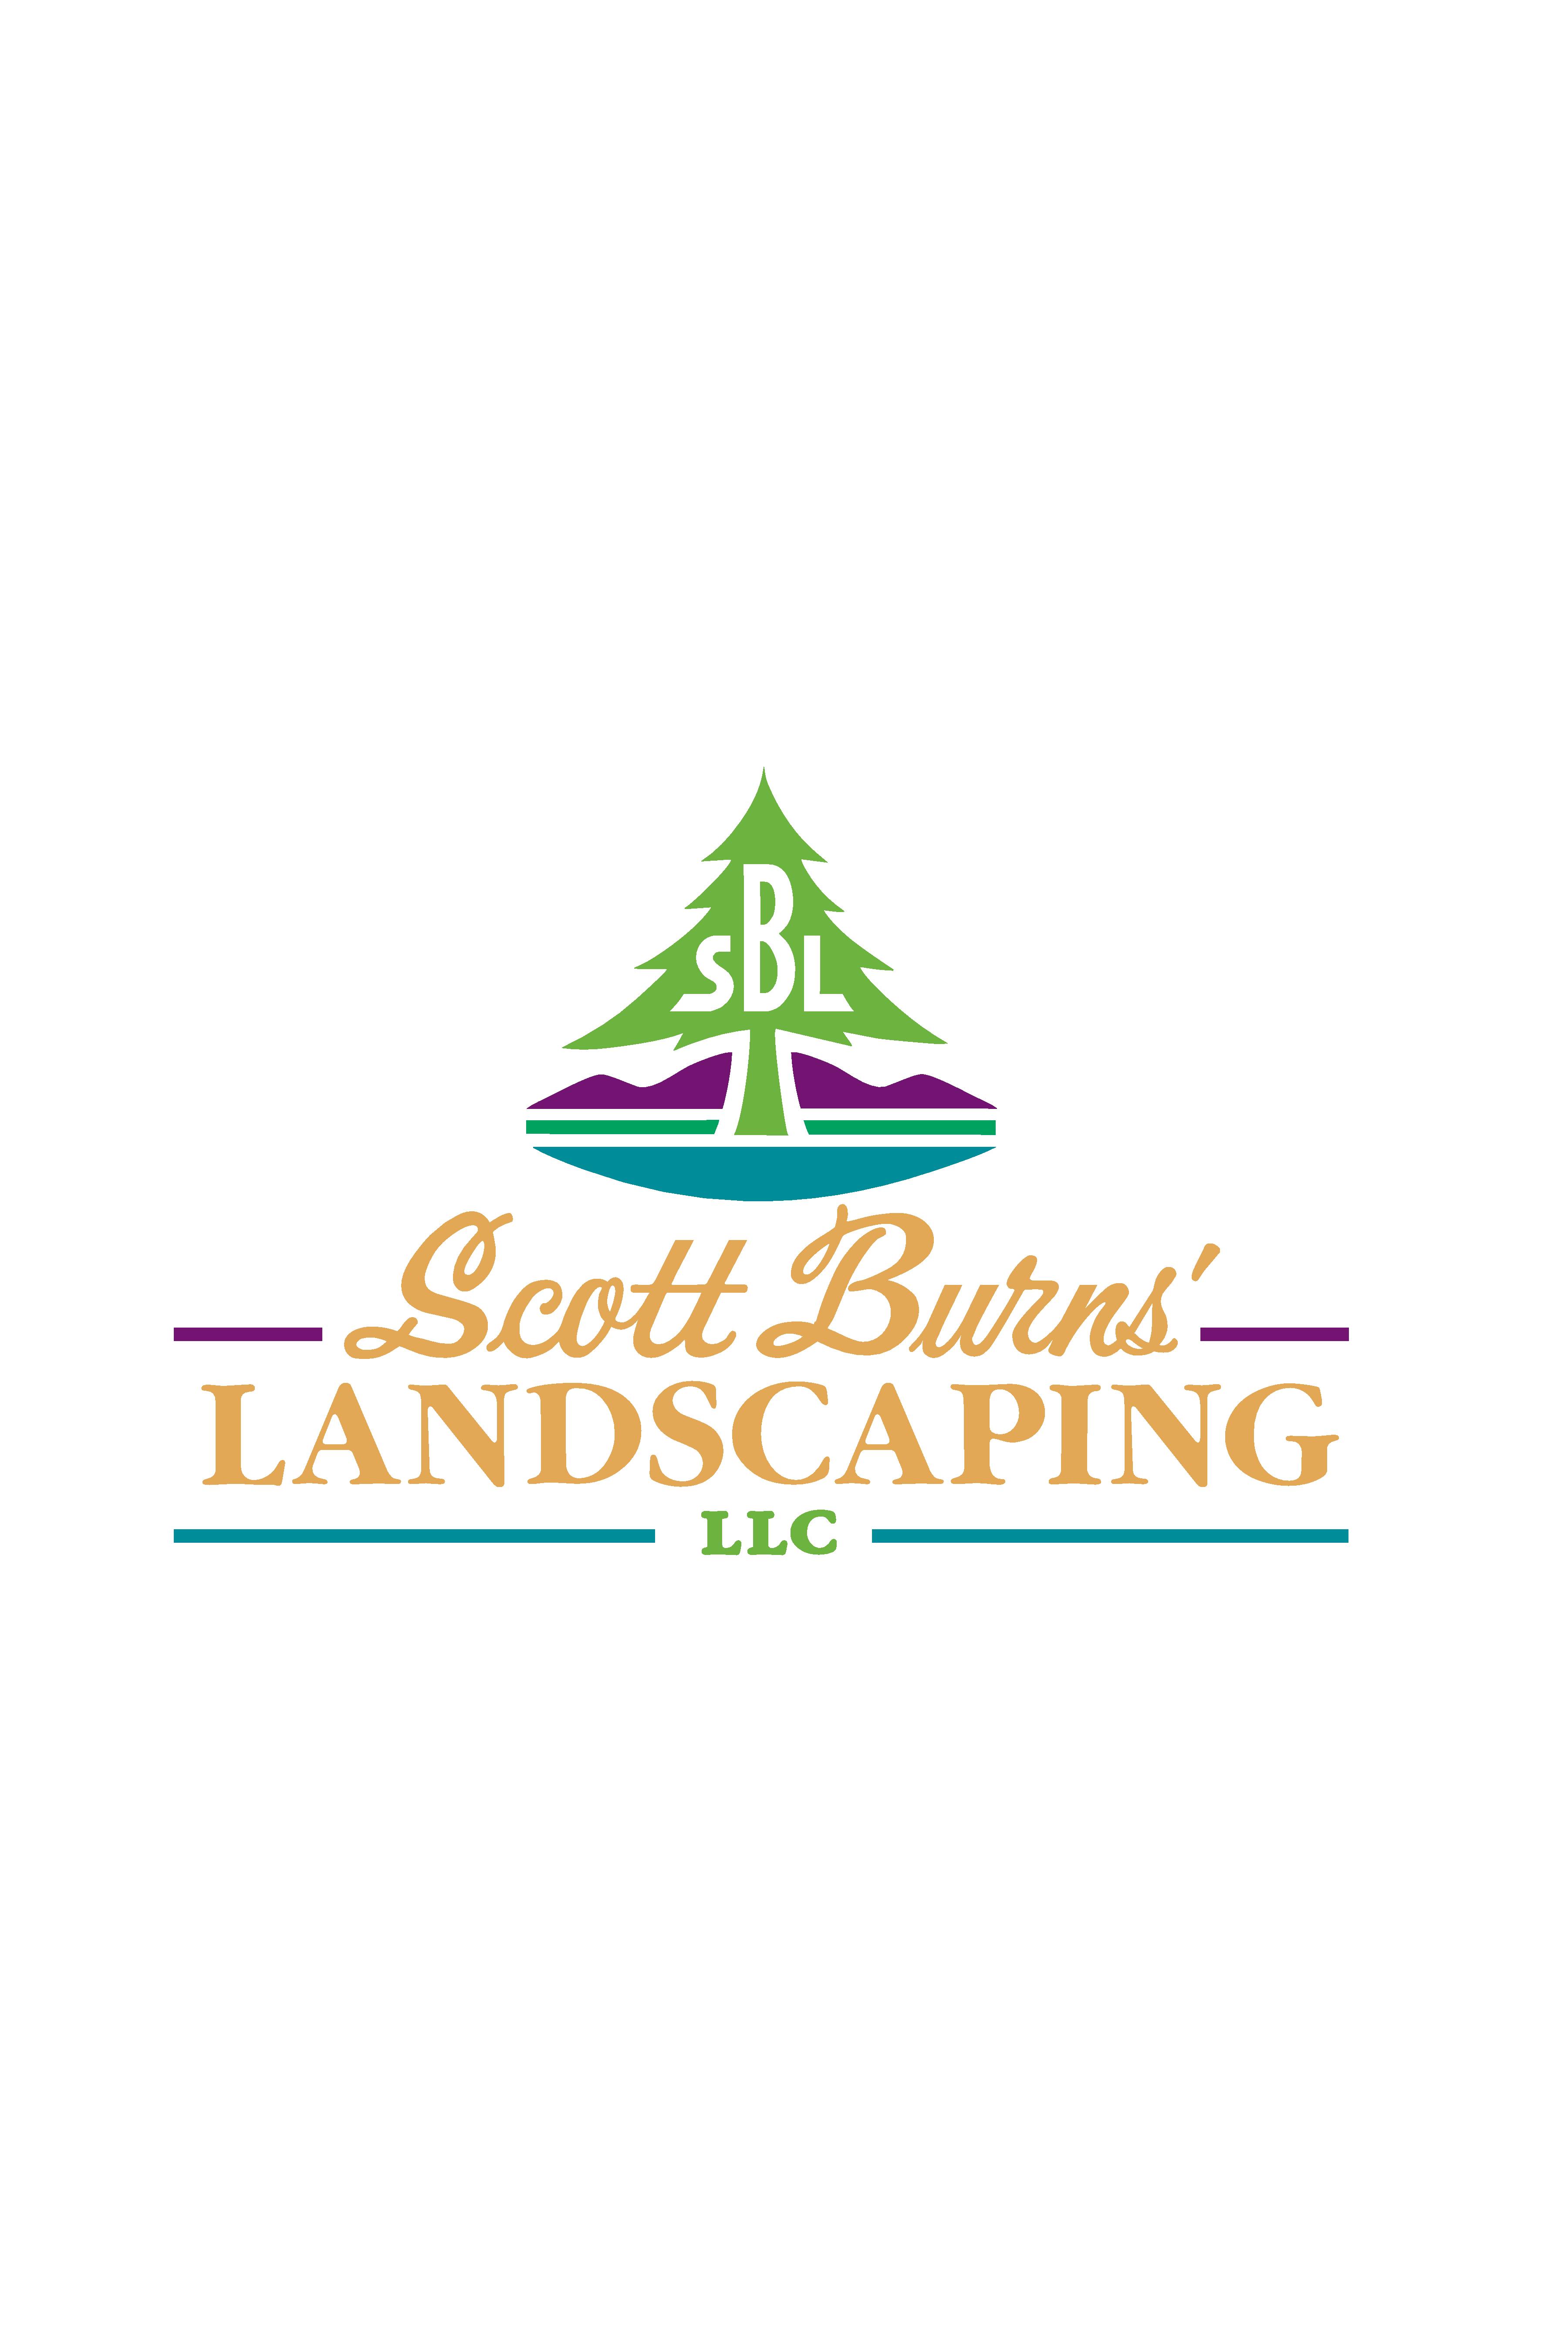 Scott Burns Landscaping LLC 